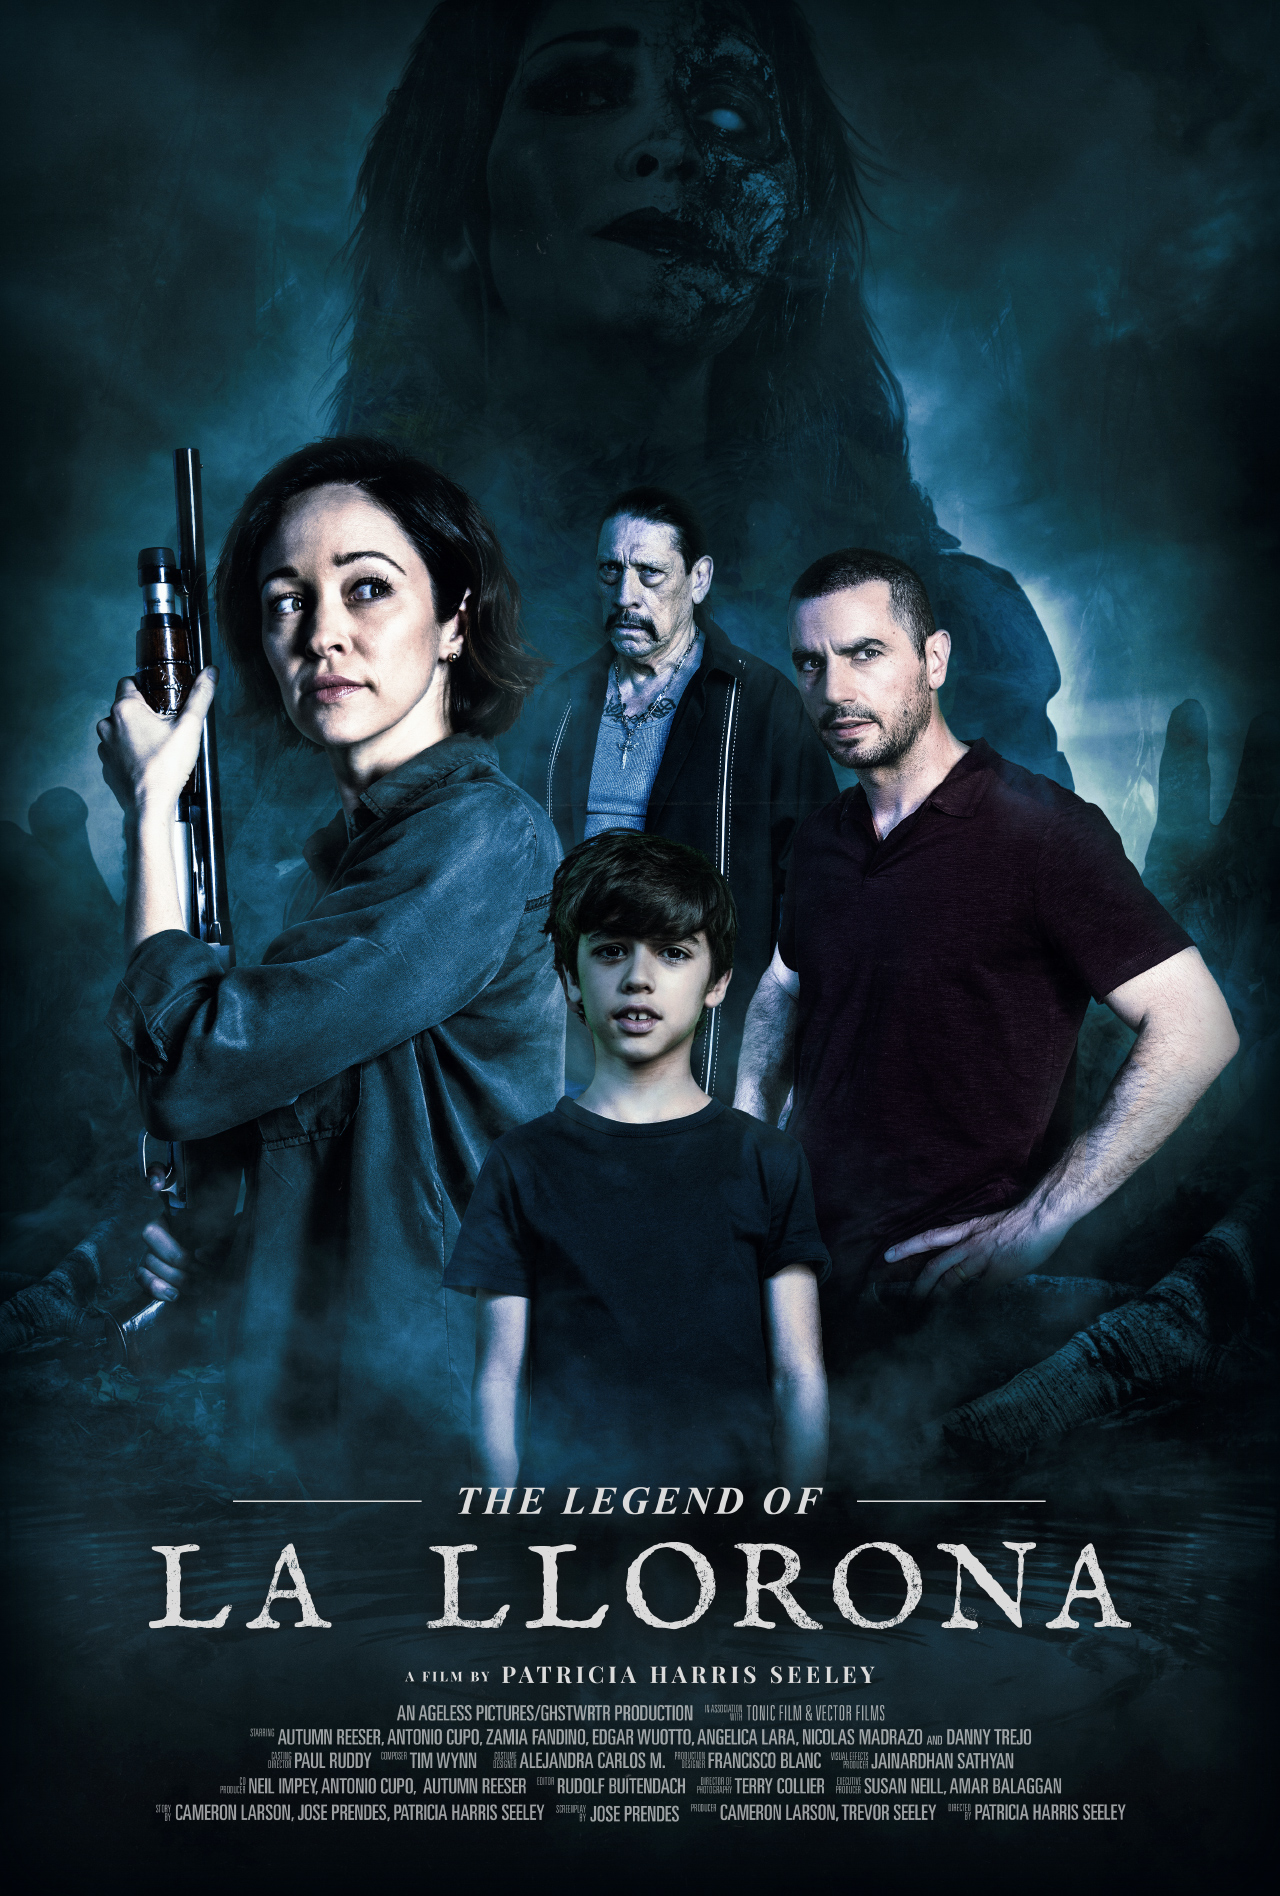 A-Chorona-volta-ao-cinema-em-novo-filme-baseado-na-lenda-The-Legend-of-La-Llorona-posters-trilhadomedo